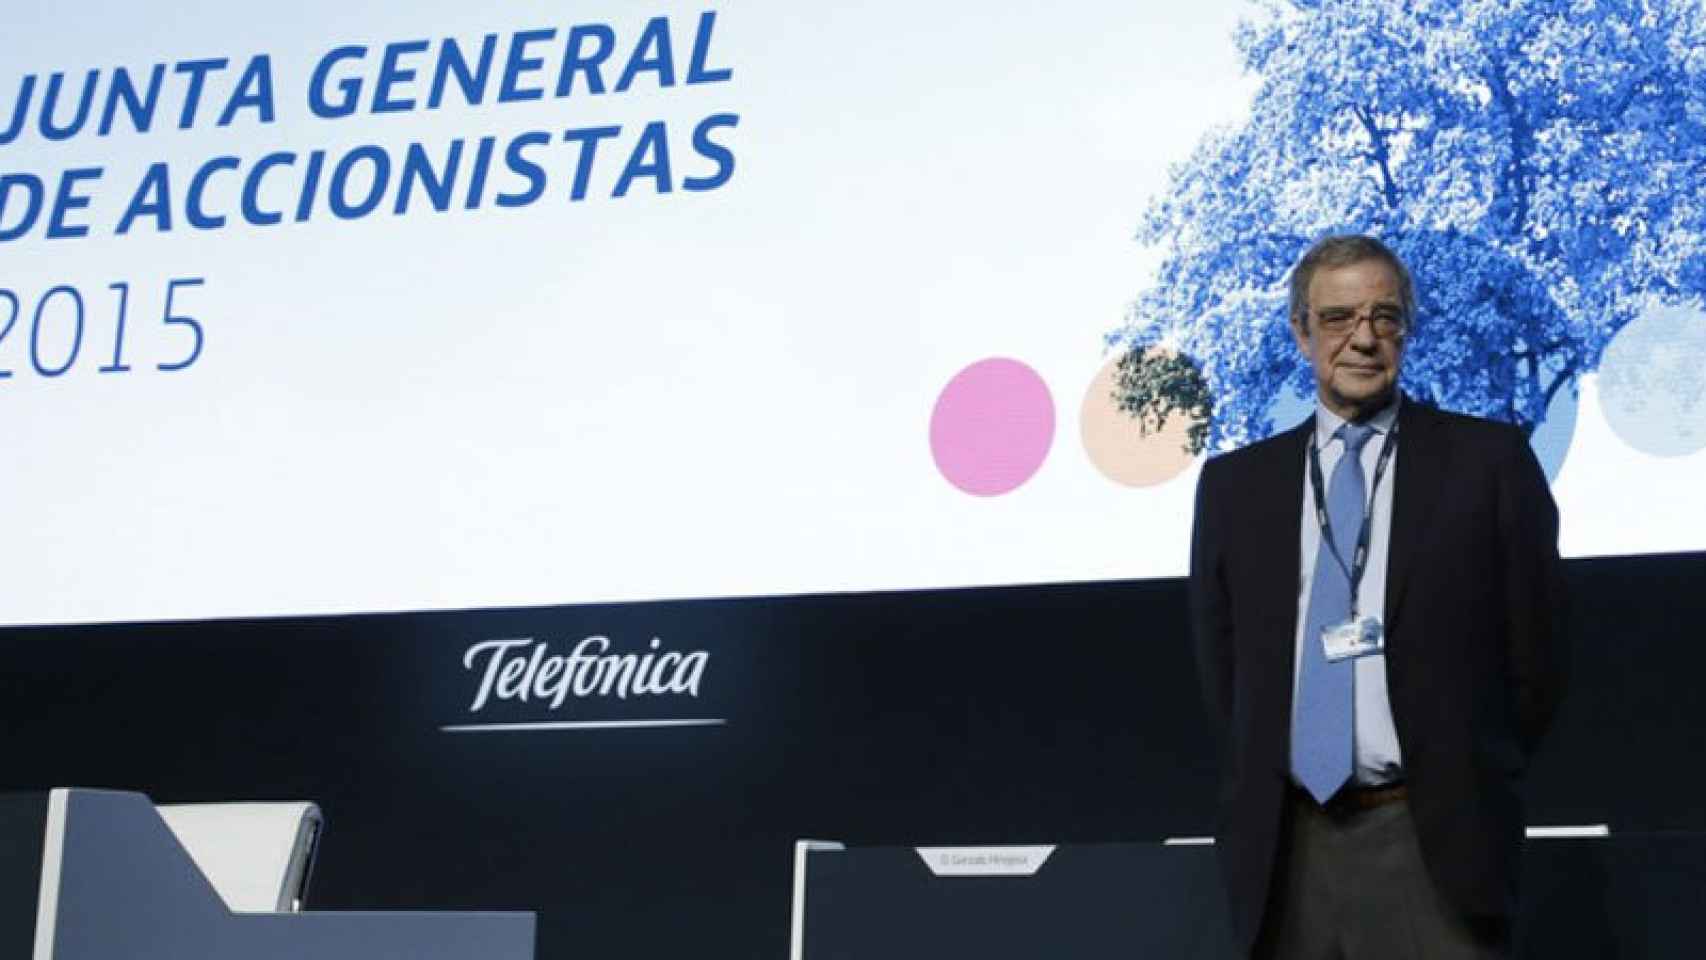 César Alierta, presidente de Telefónica, en la junta general de accionistas de 2015